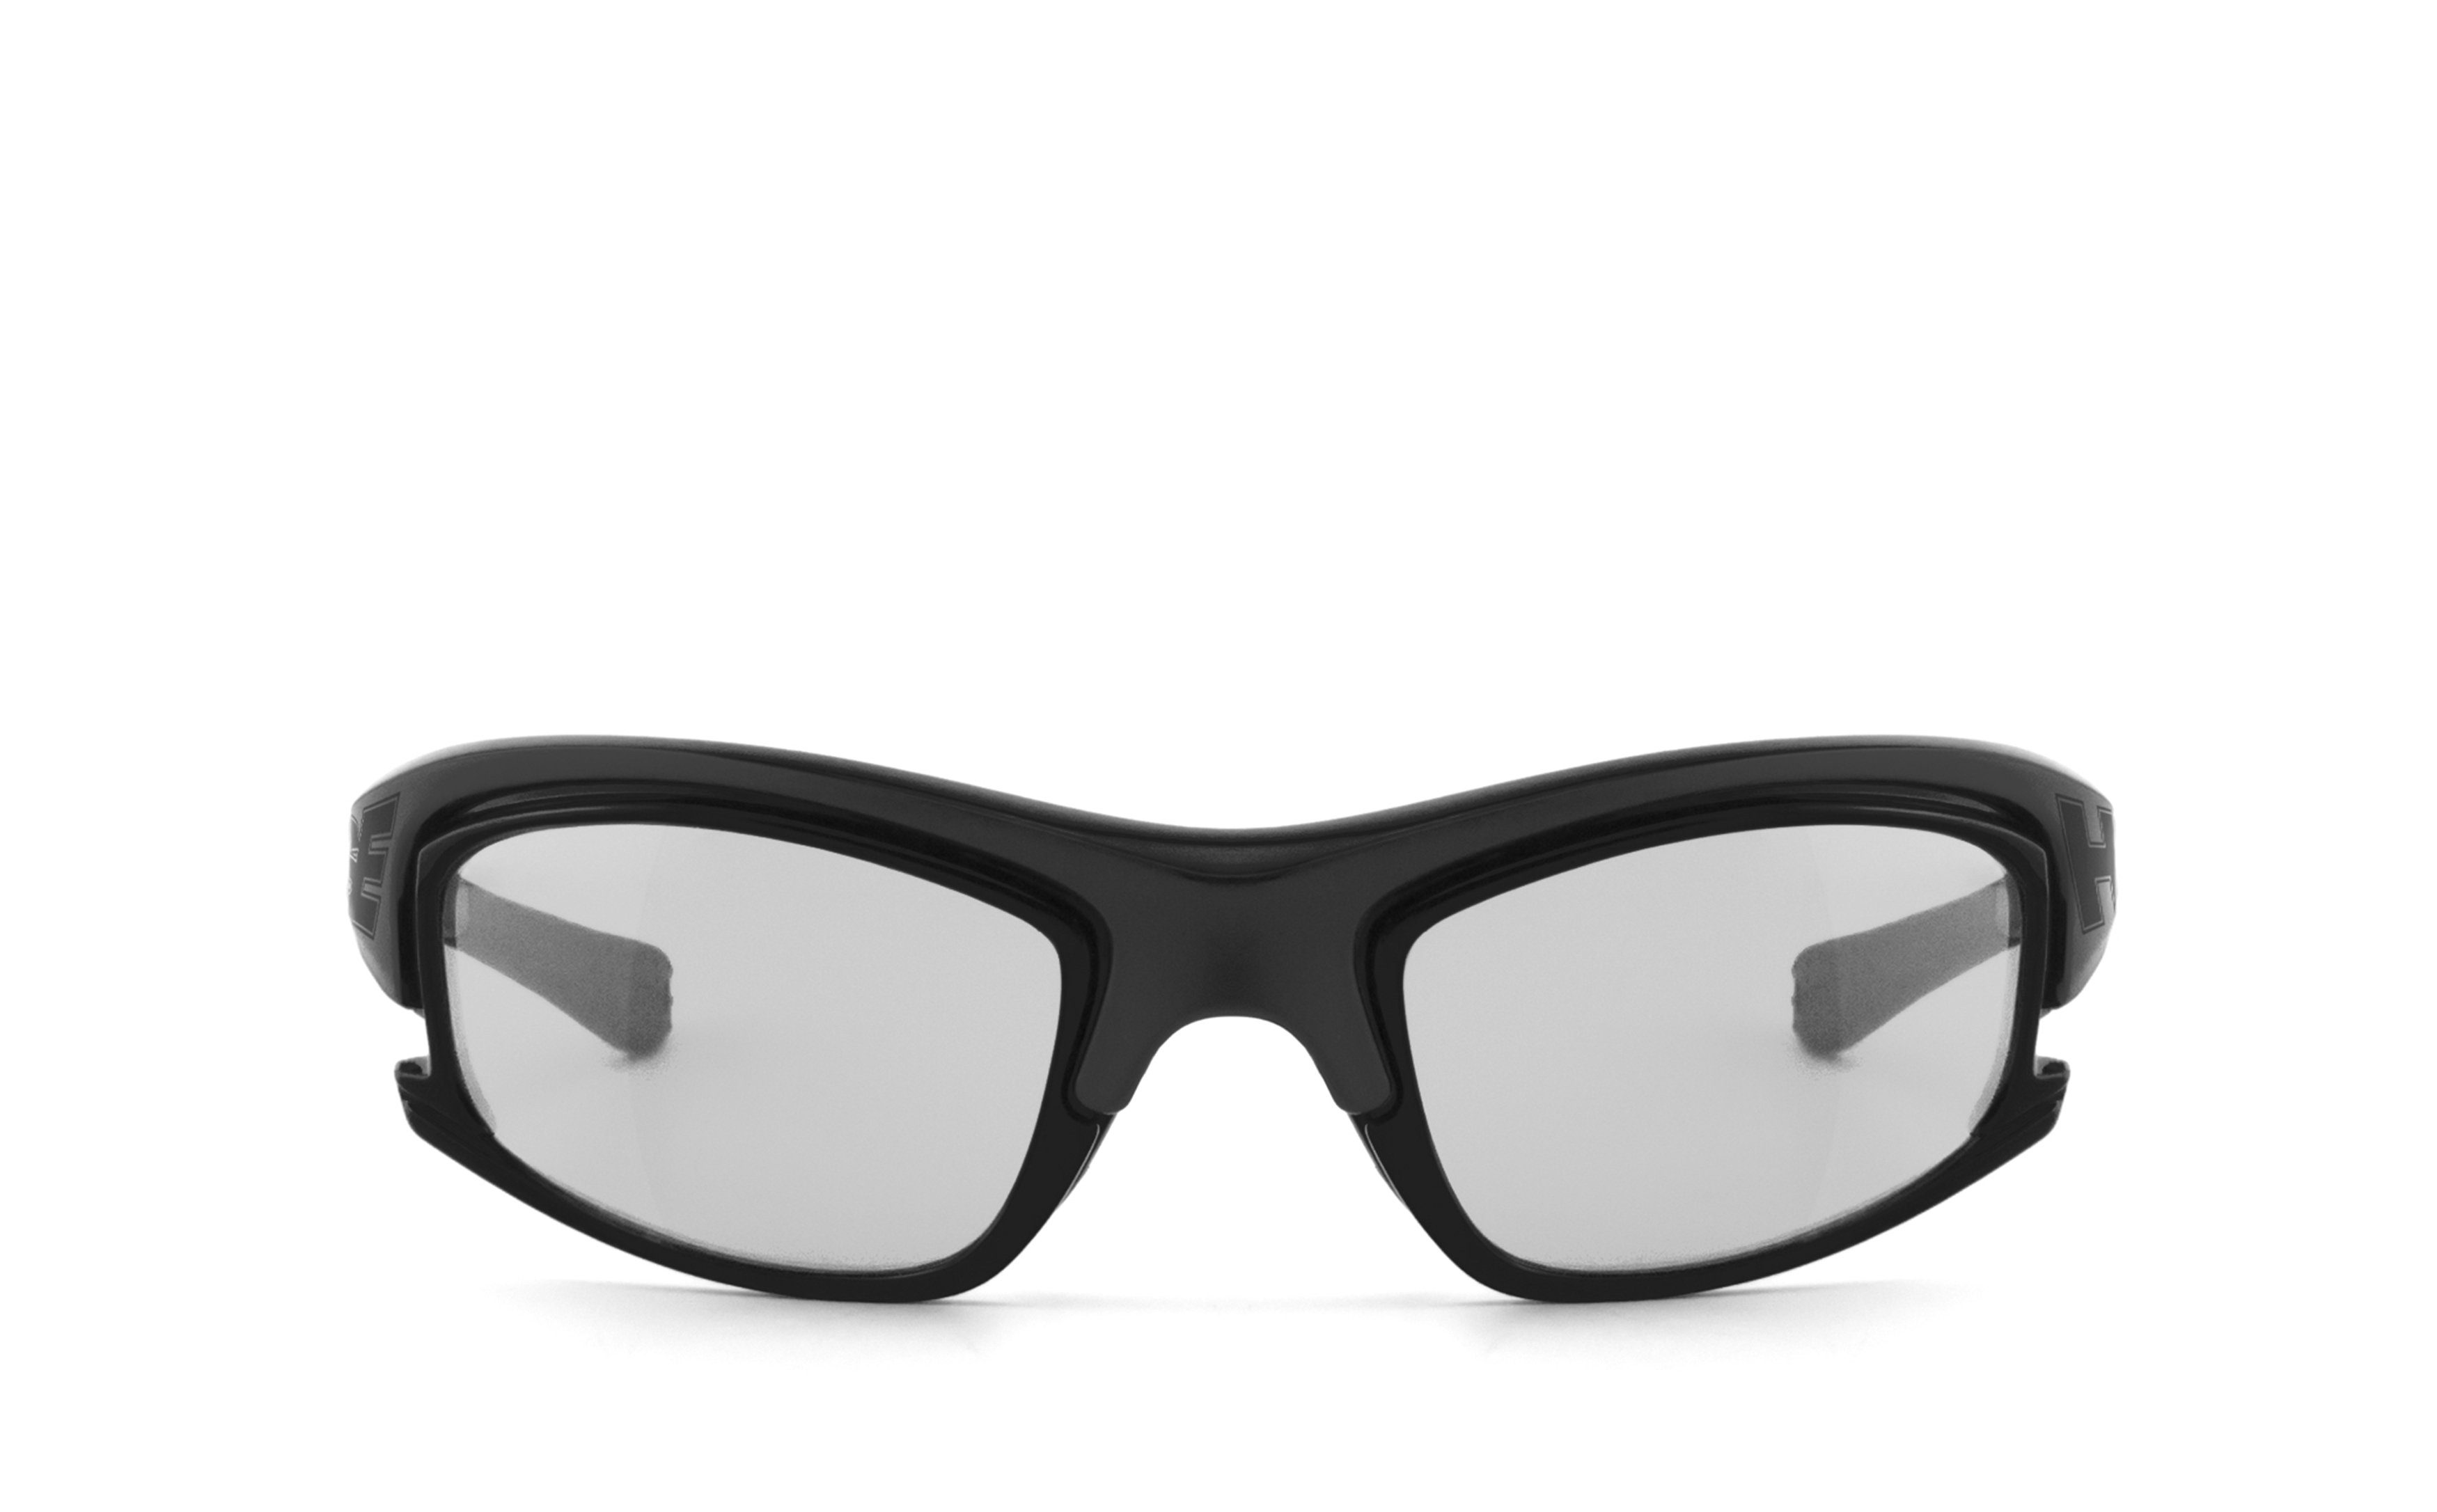 HSE - Gläser selbsttönende 2015, Sportbrille SportEyes schnell